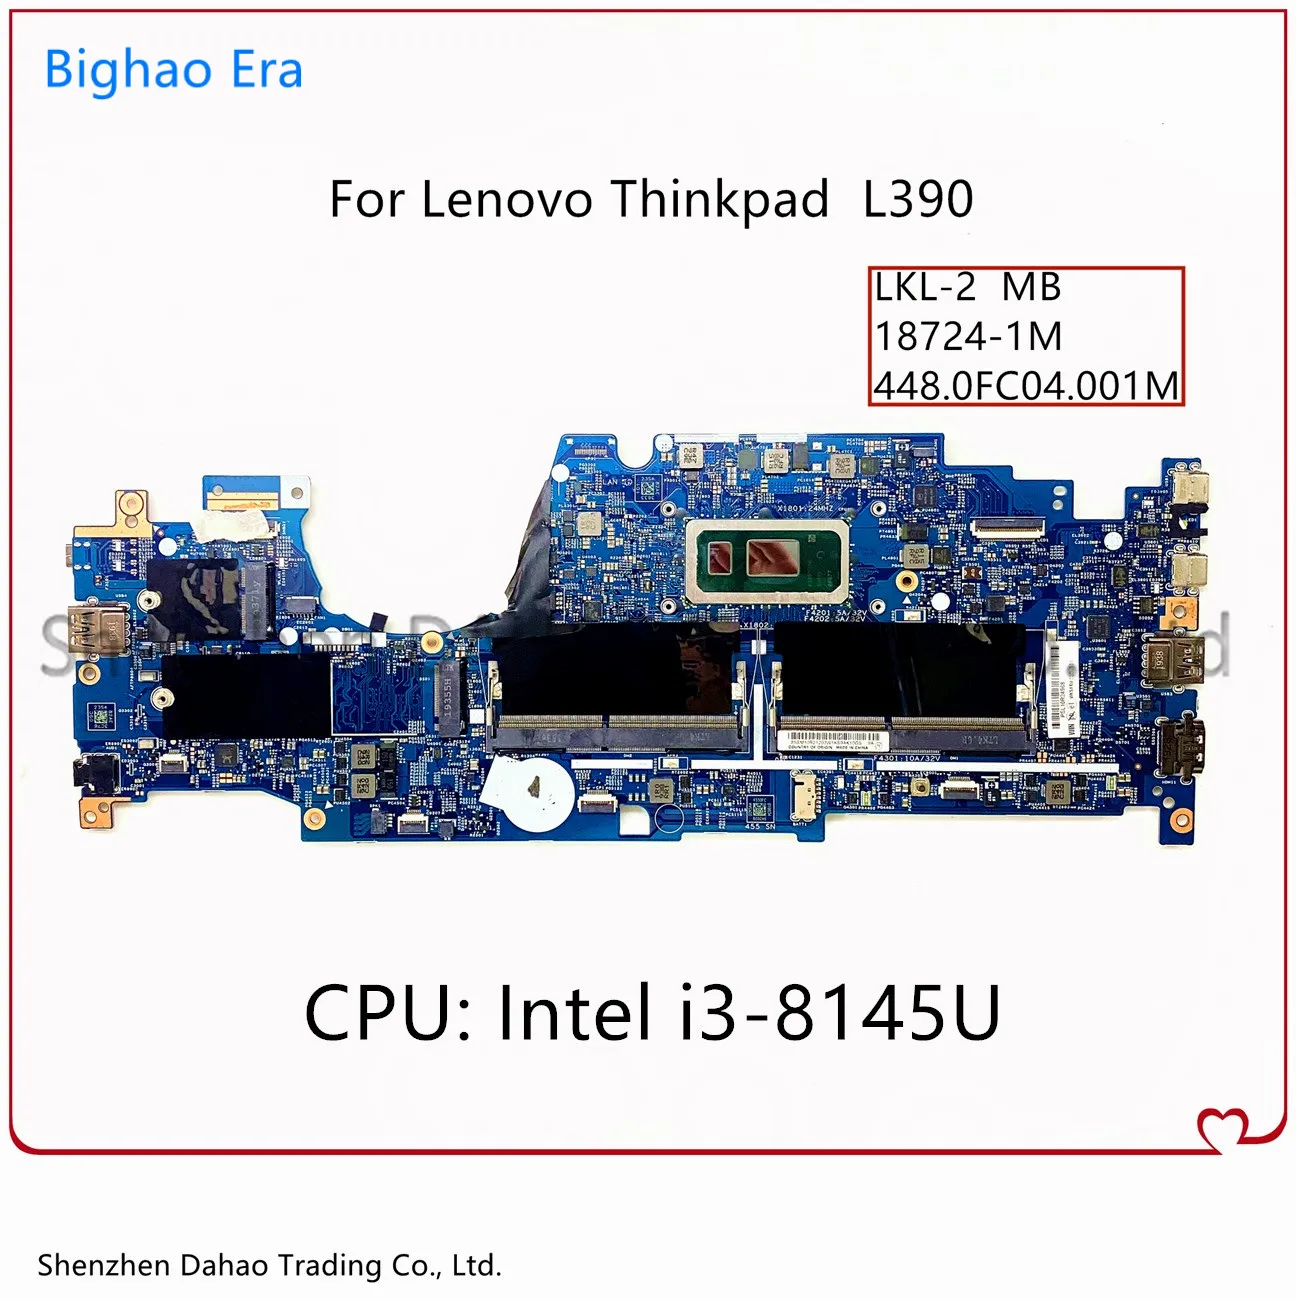 Fru: 02DL830 материнская плата для ноутбука Lenovo Thinkpad L390 Yoga с i3-8145U CPU 448.0FC04.001M 18724-1M 100%